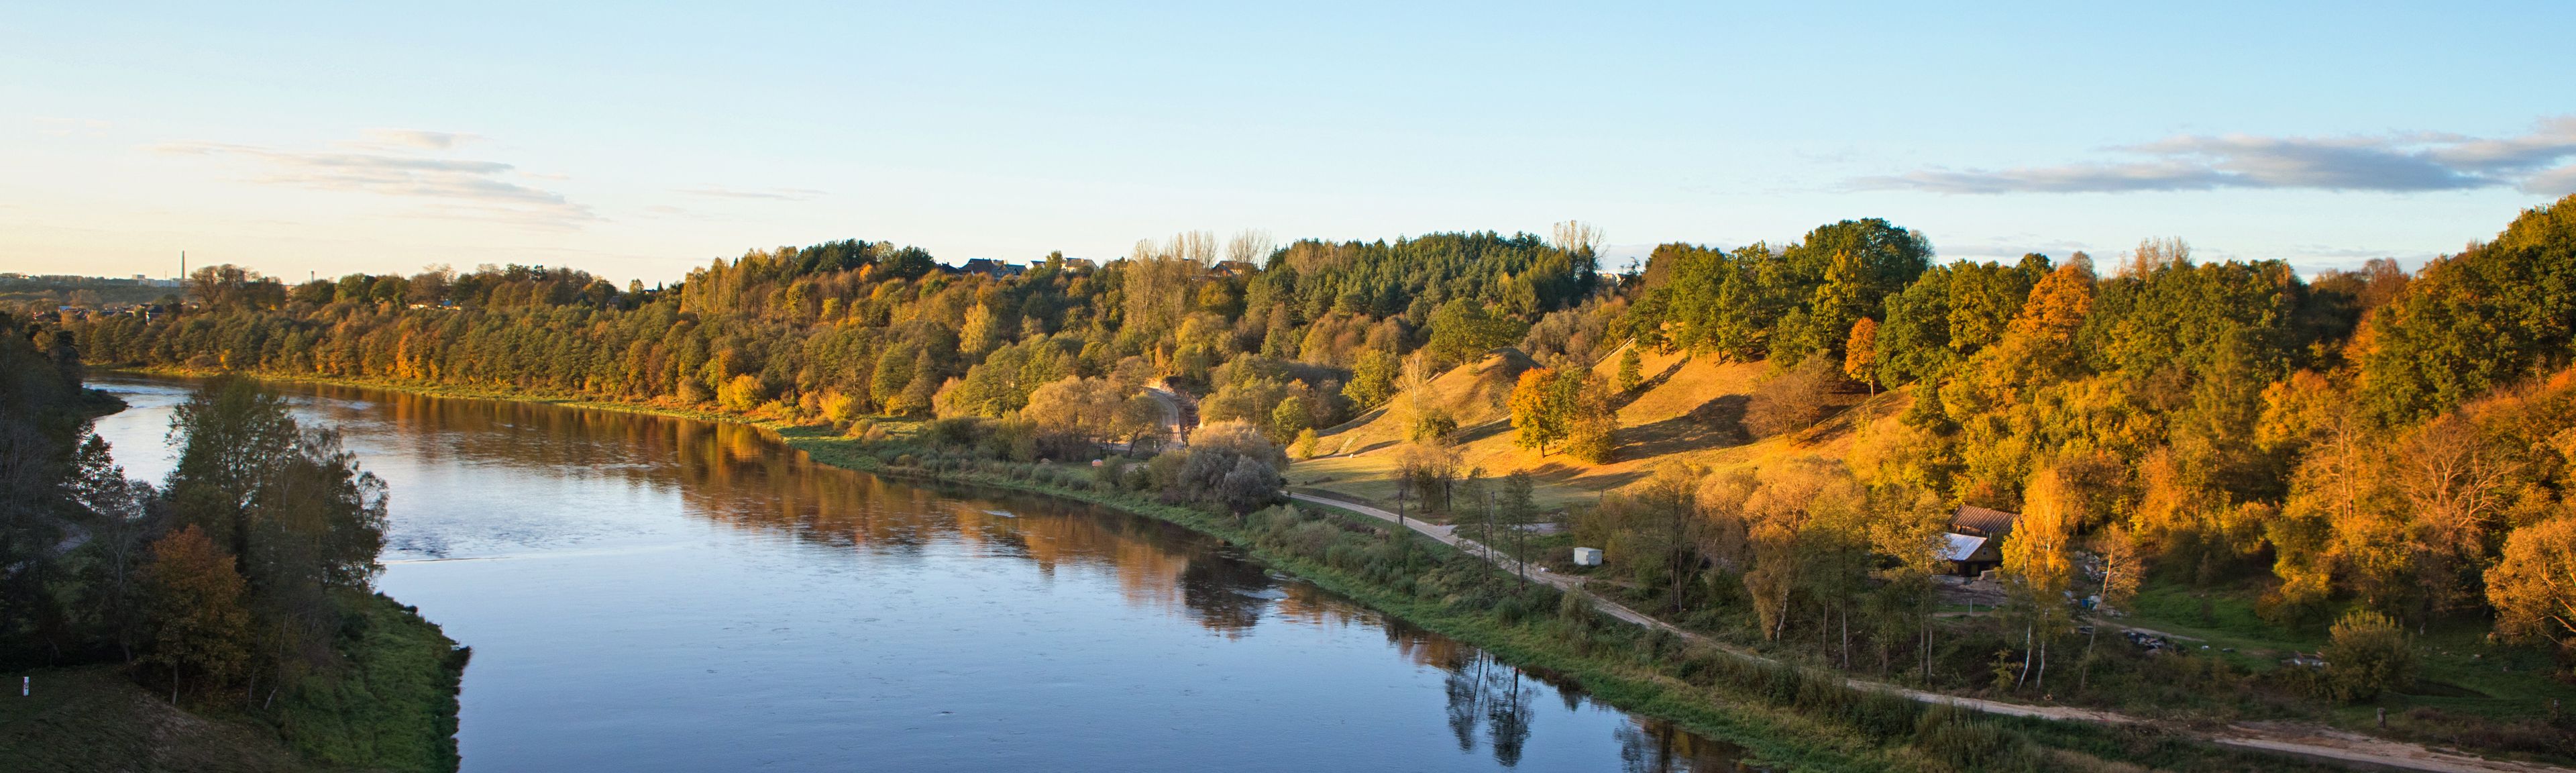 Widok na rzekę i zapierającą dech w piersiach przyrodę na Litwie